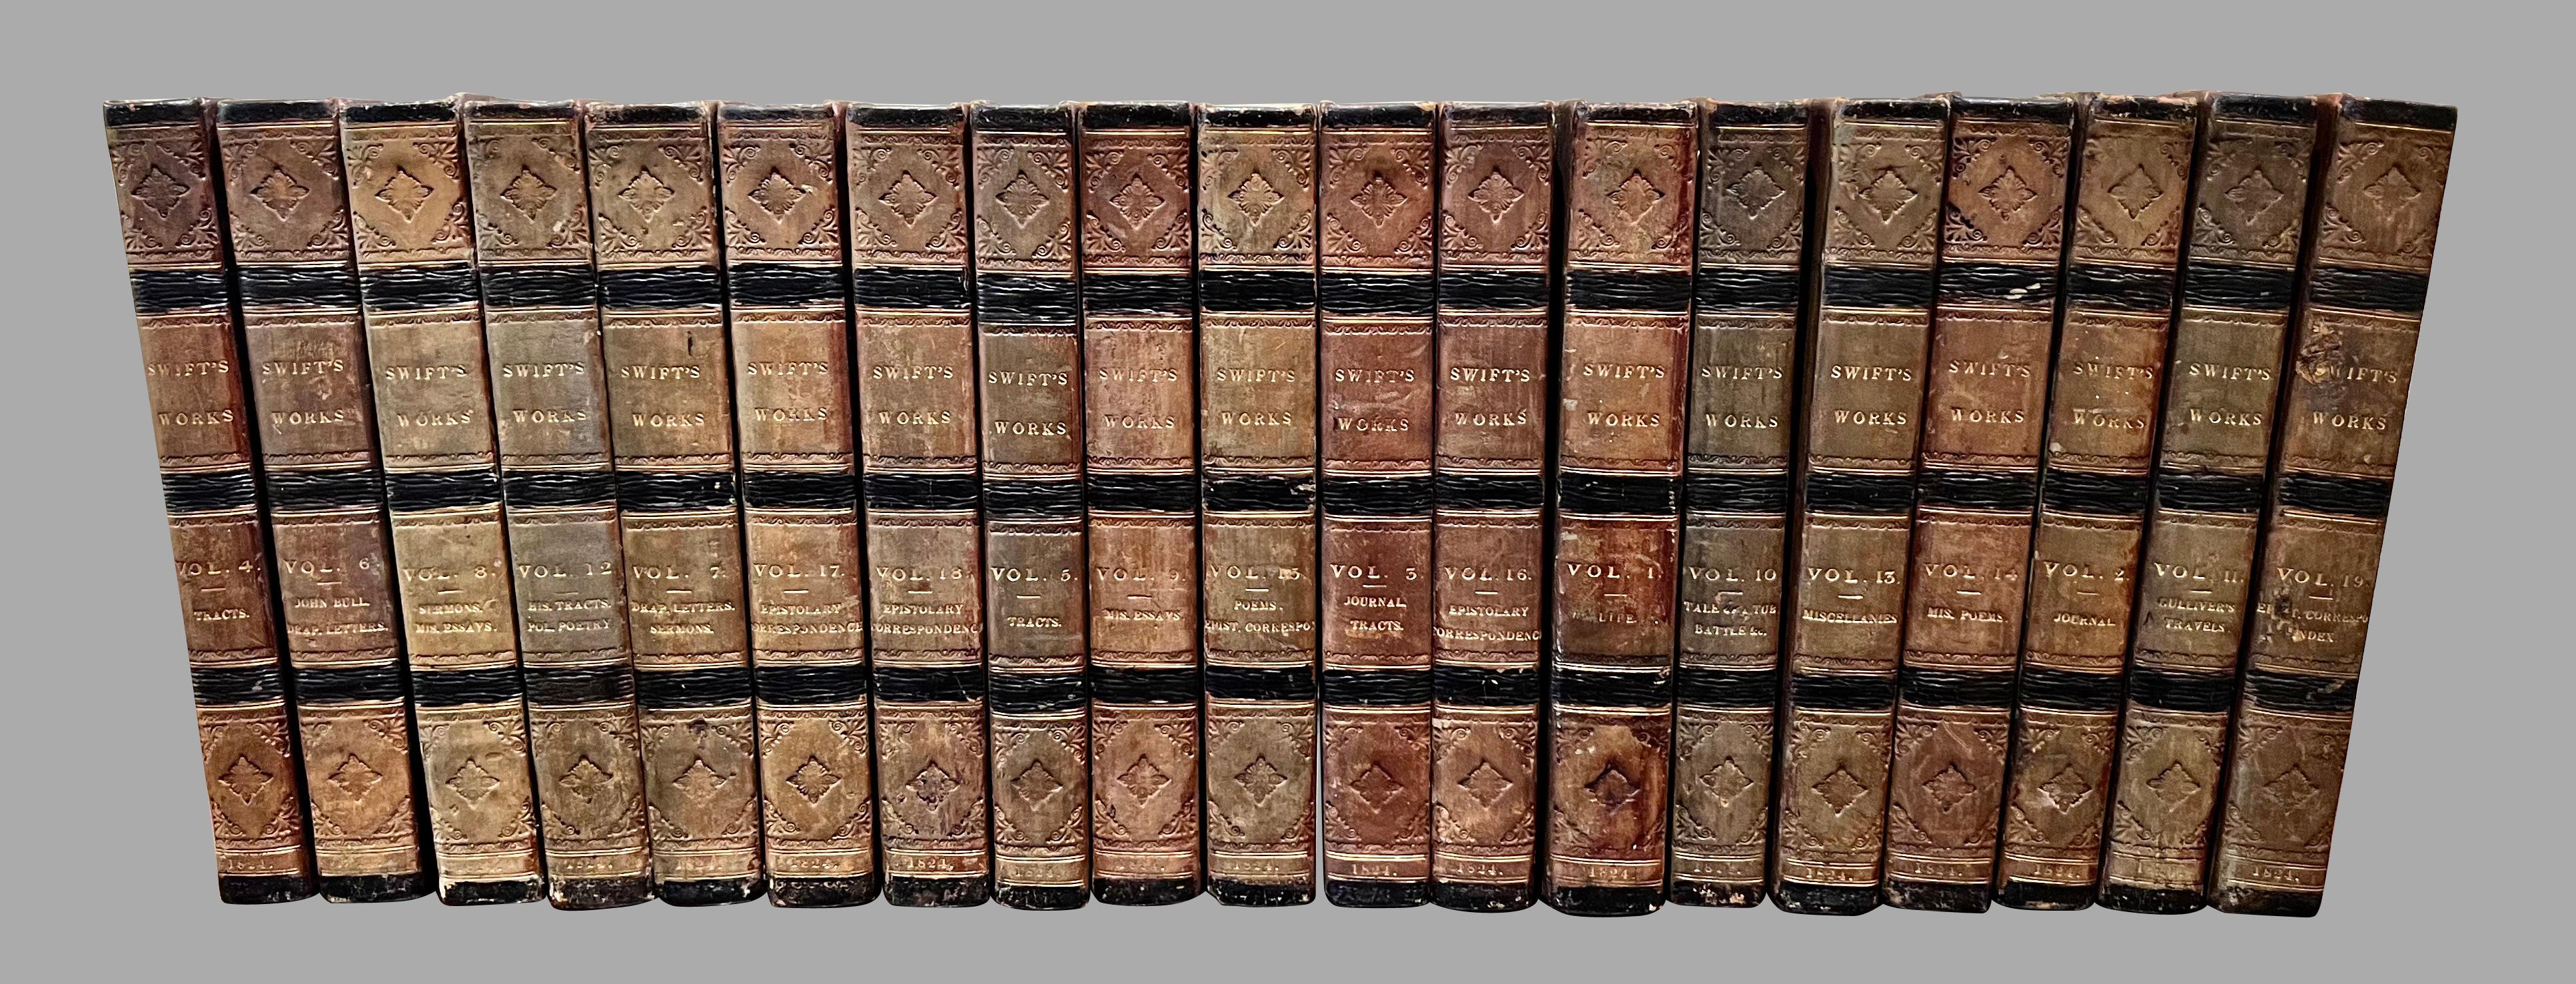 Les œuvres de Jonathan Swift (1667-1745)  deuxième édition complète en 19 volumes reliés en cuir, publiée pour Archibald Constable and Co. Édimbourg et Hurst, Robinson, and Co. Londres 1824. Swift était un célèbre essayiste, écrivain, poète et